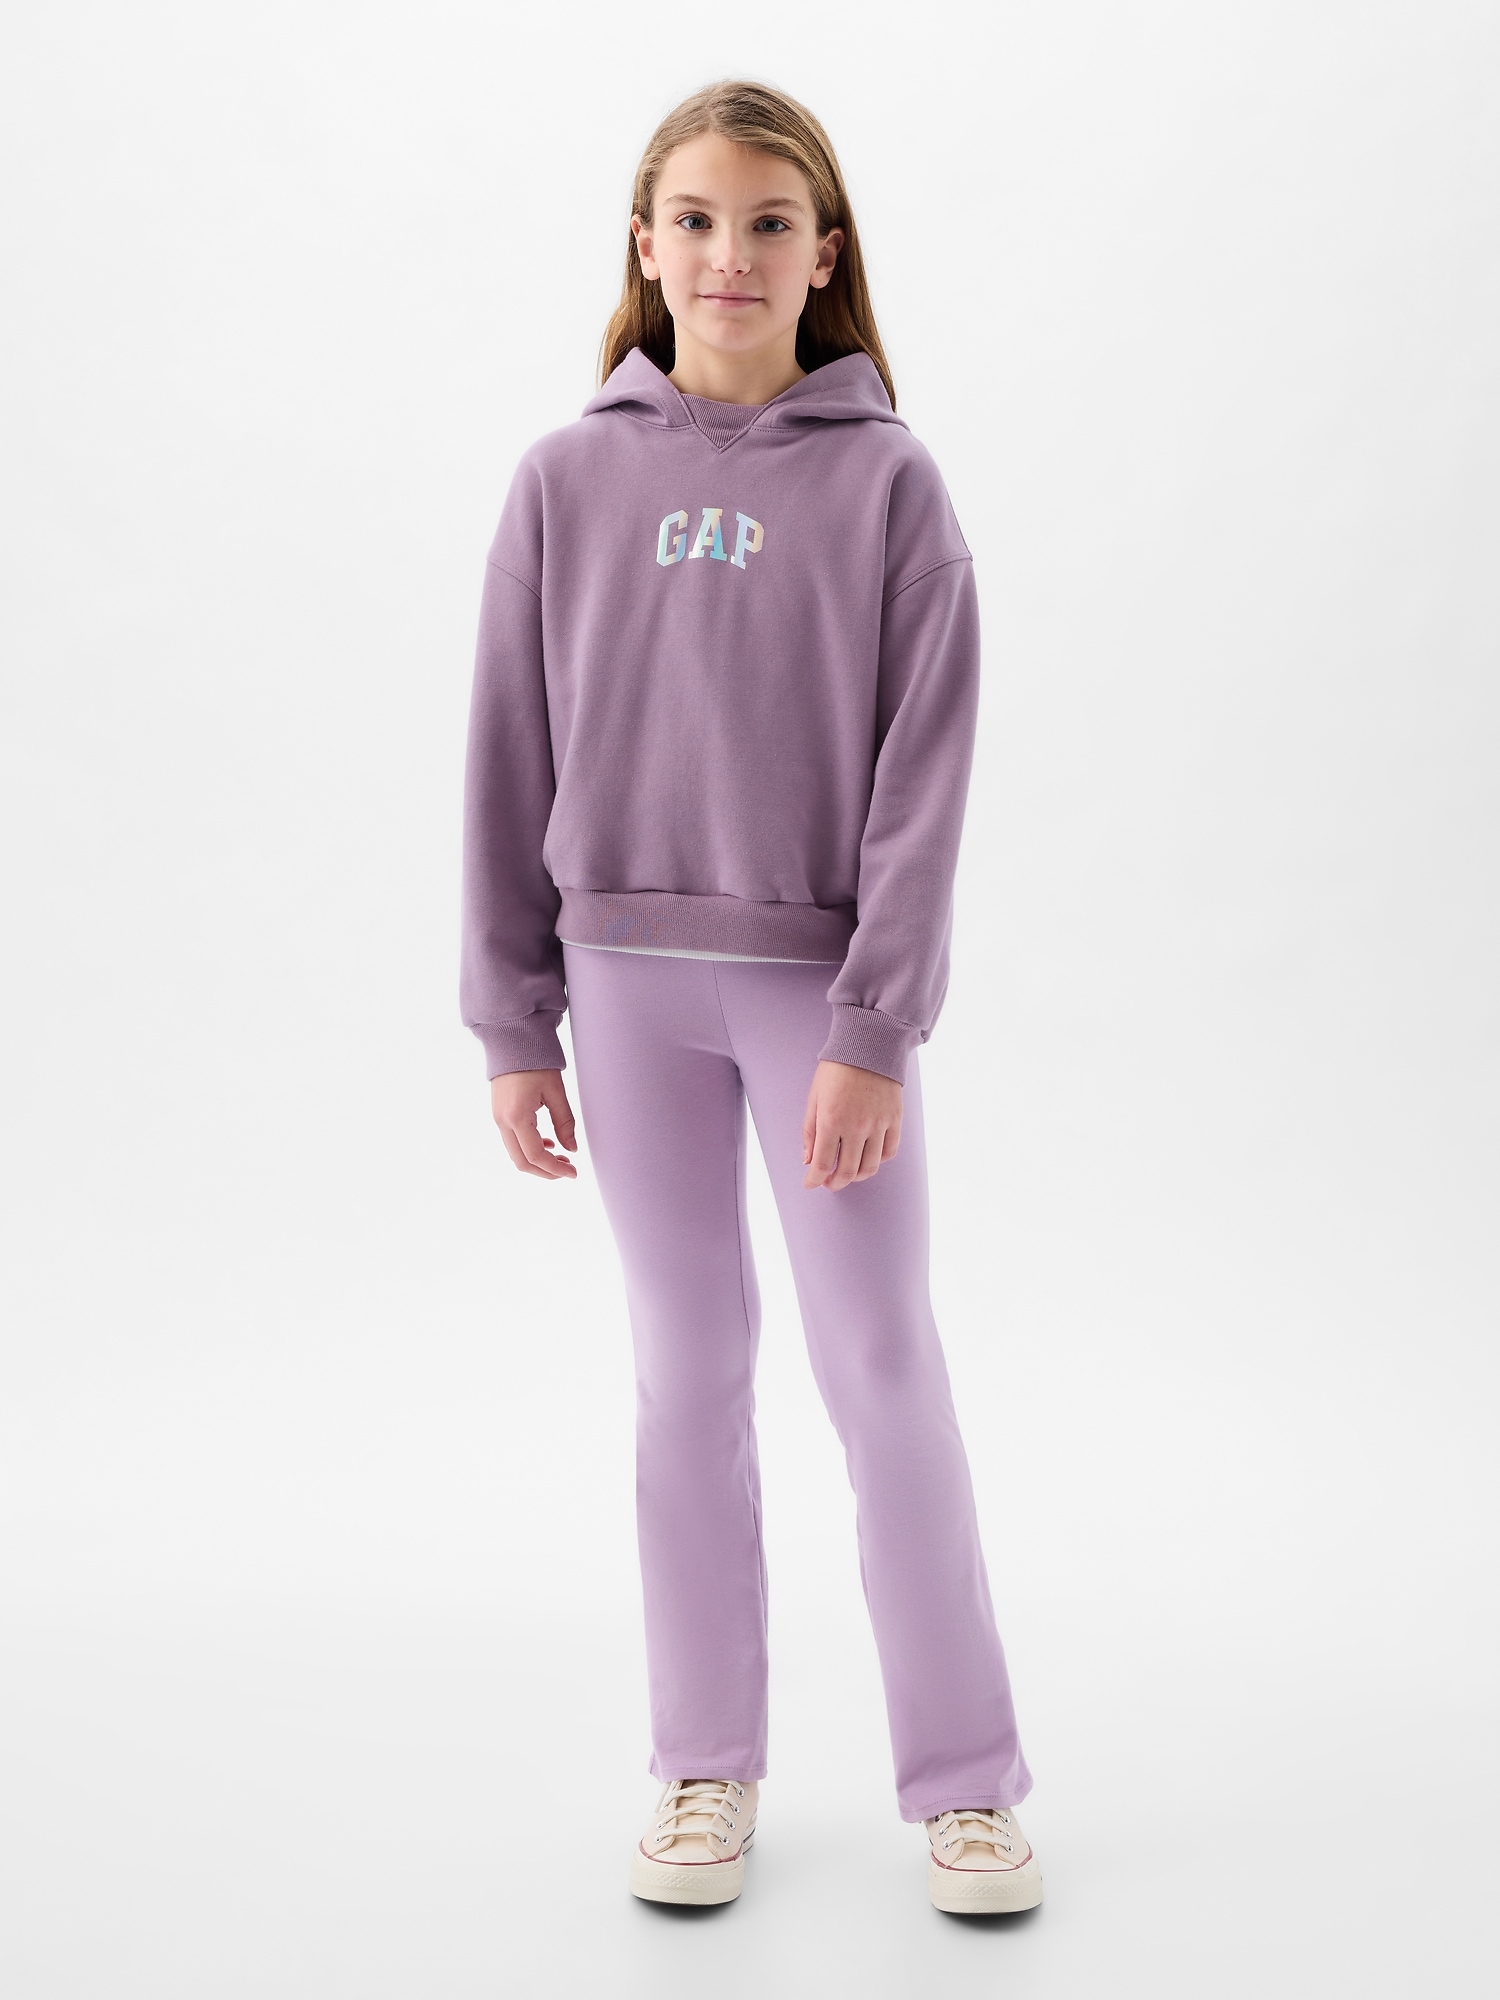 Gap Kids Girls Pants Leggings Ski Lift Gray Size XL 12